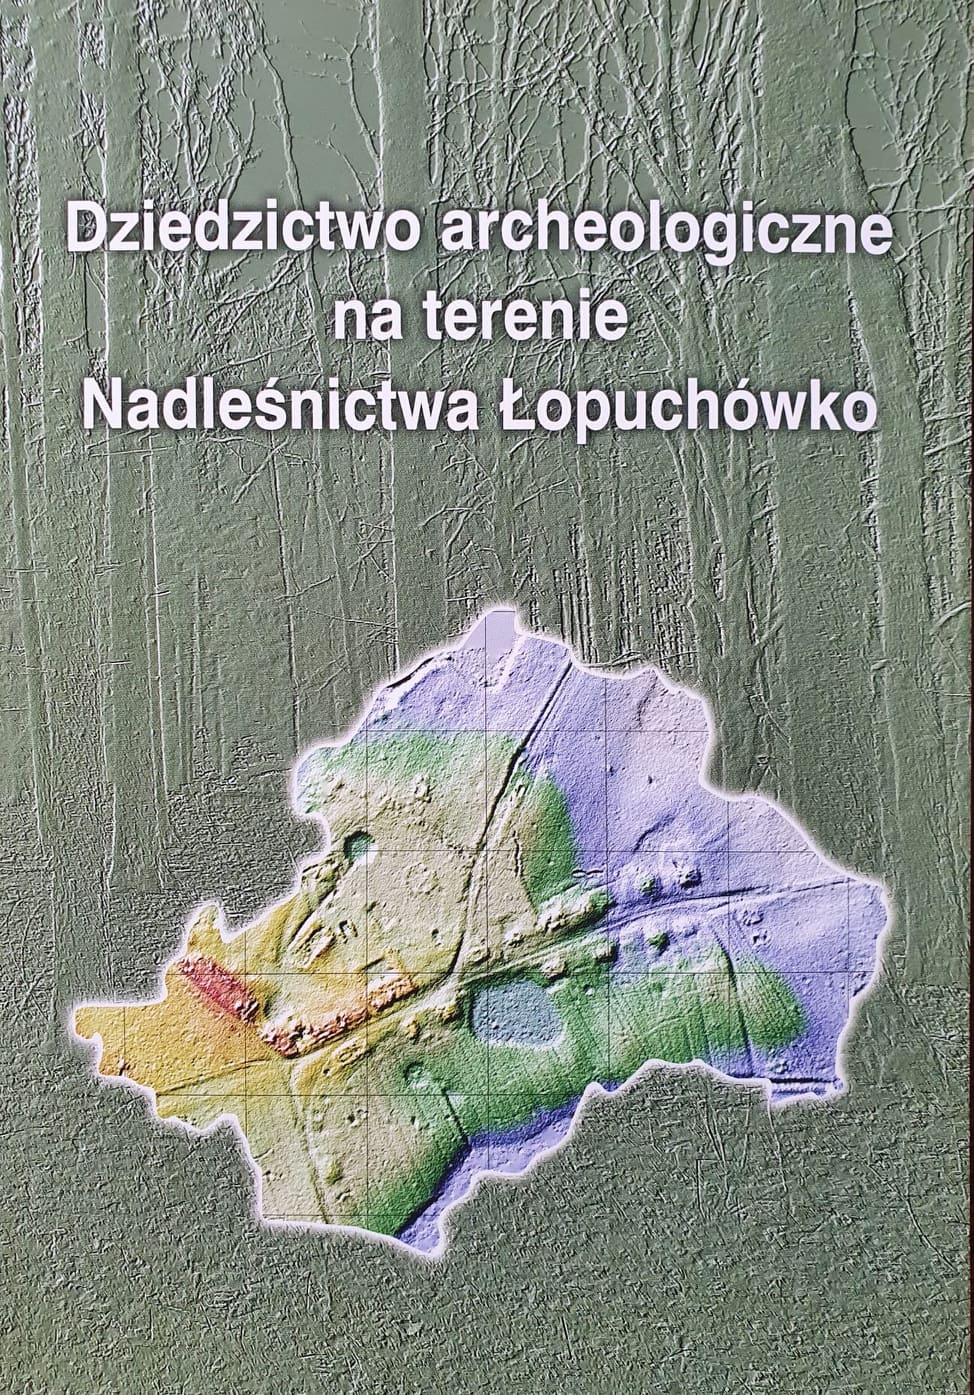 Zdjęcie przedstawia okładkę książki "Dziedzictwo archeologiczne na terenie Nadleśnictwa Łopuchówko" autorstwa M. Krzepkowskiego i T. Sobalaka.